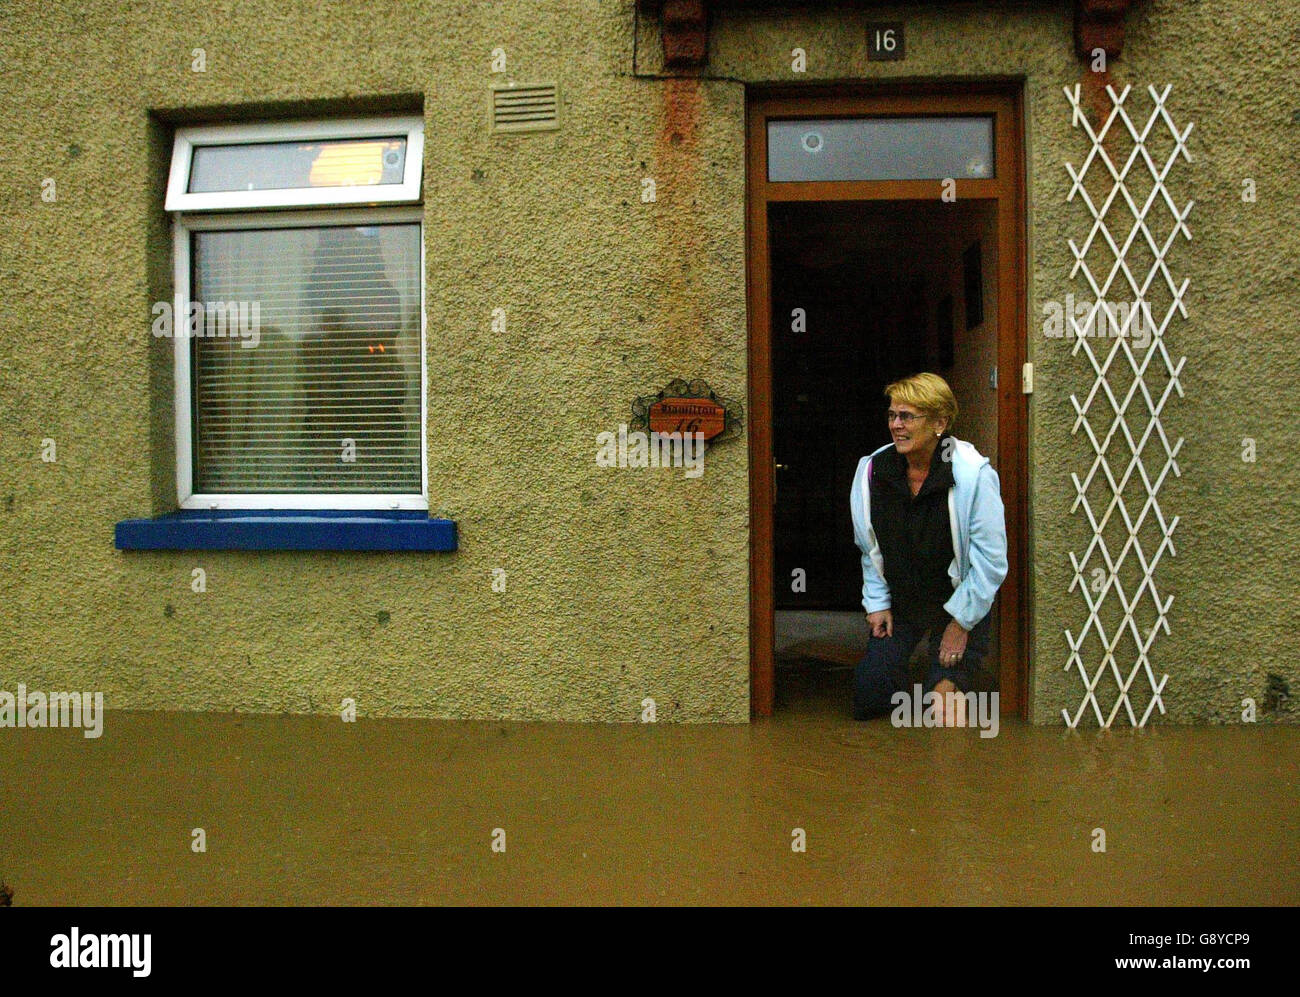 Les habitants attendent d'être sauvés des inondations, mercredi 12 octobre 2005, à Hawick, aux frontières écossaises. Les pluies torrentielles ont causé le chaos des inondations dans toute la Grande-Bretagne avec des services d'urgence étirés jusqu'à la limite. Les descentes prolongées qui ont frappé la majeure partie du pays hier se poursuivent du jour au lendemain, touchant des centaines de maisons et forçant la fermeture de nombreuses routes. Parmi les régions les plus touchées figurent le sud-ouest de l'Écosse, l'ouest du pays de Galles et Cumbria. Voir l'histoire de PA INONDATIONS MÉTÉOROLOGIQUES. APPUYEZ SUR ASSOCIATION photo. Le crédit photo devrait se lire comme suit : David Cheskin/PA. Banque D'Images